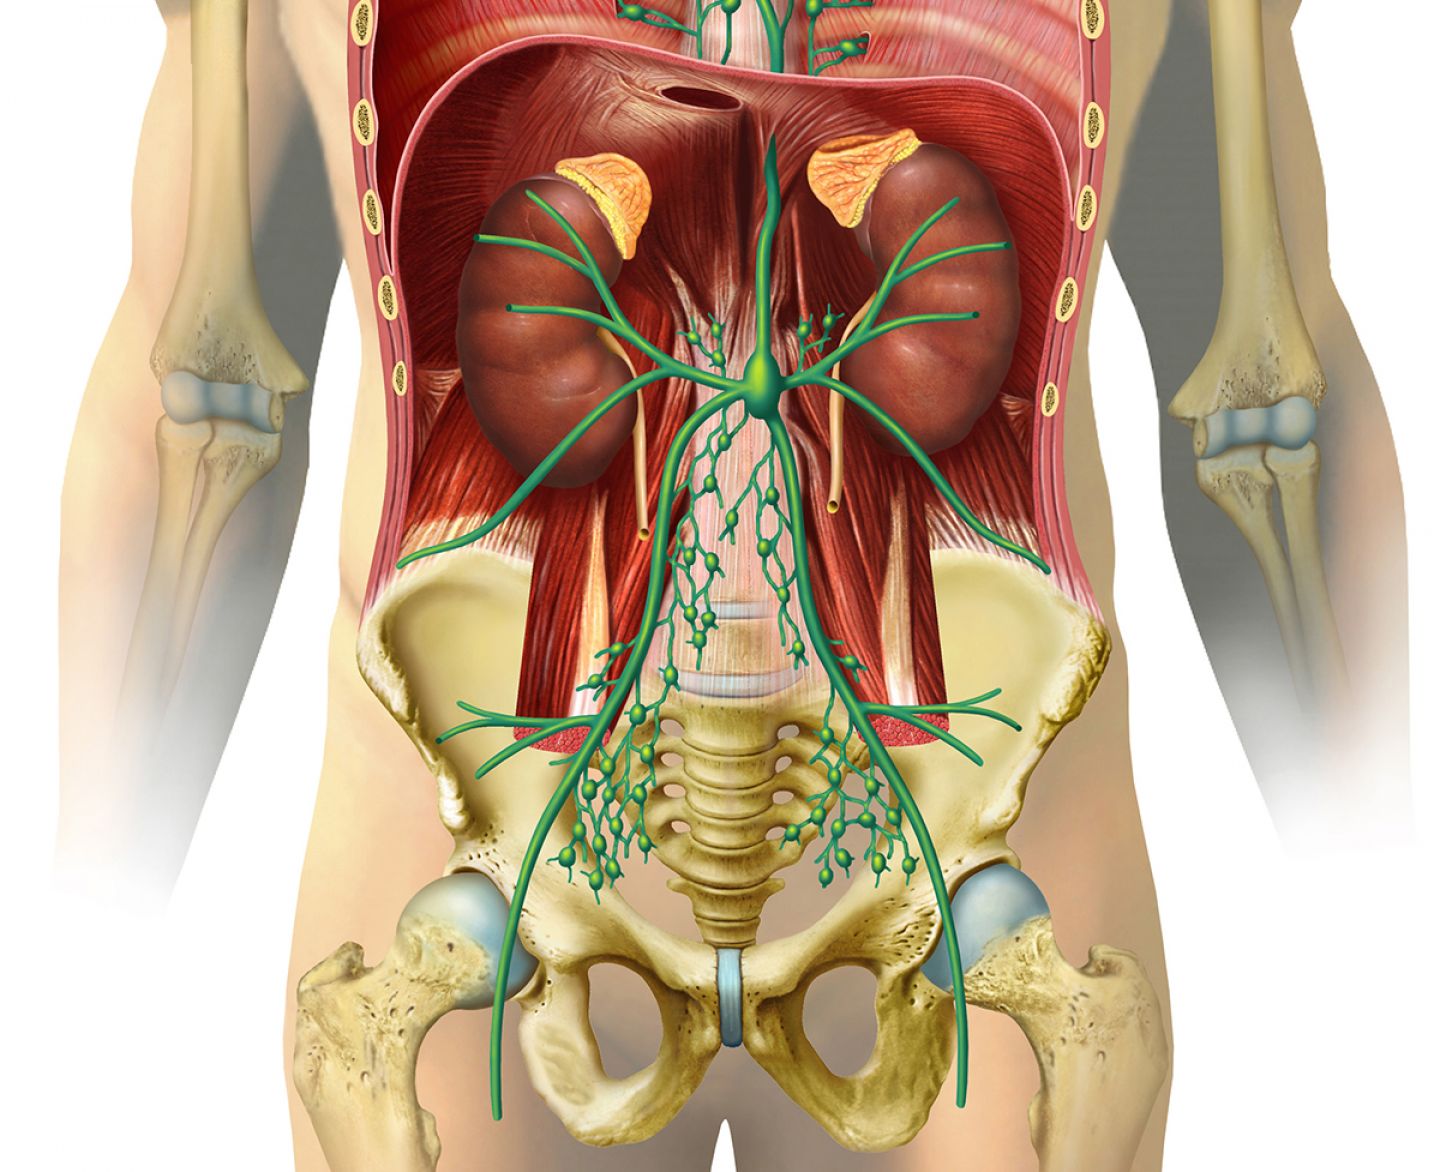 Grafik mit dem Verlauf der Lymphbahnen und Lymphknoten (grün) im Bauch- und Beckenraum.